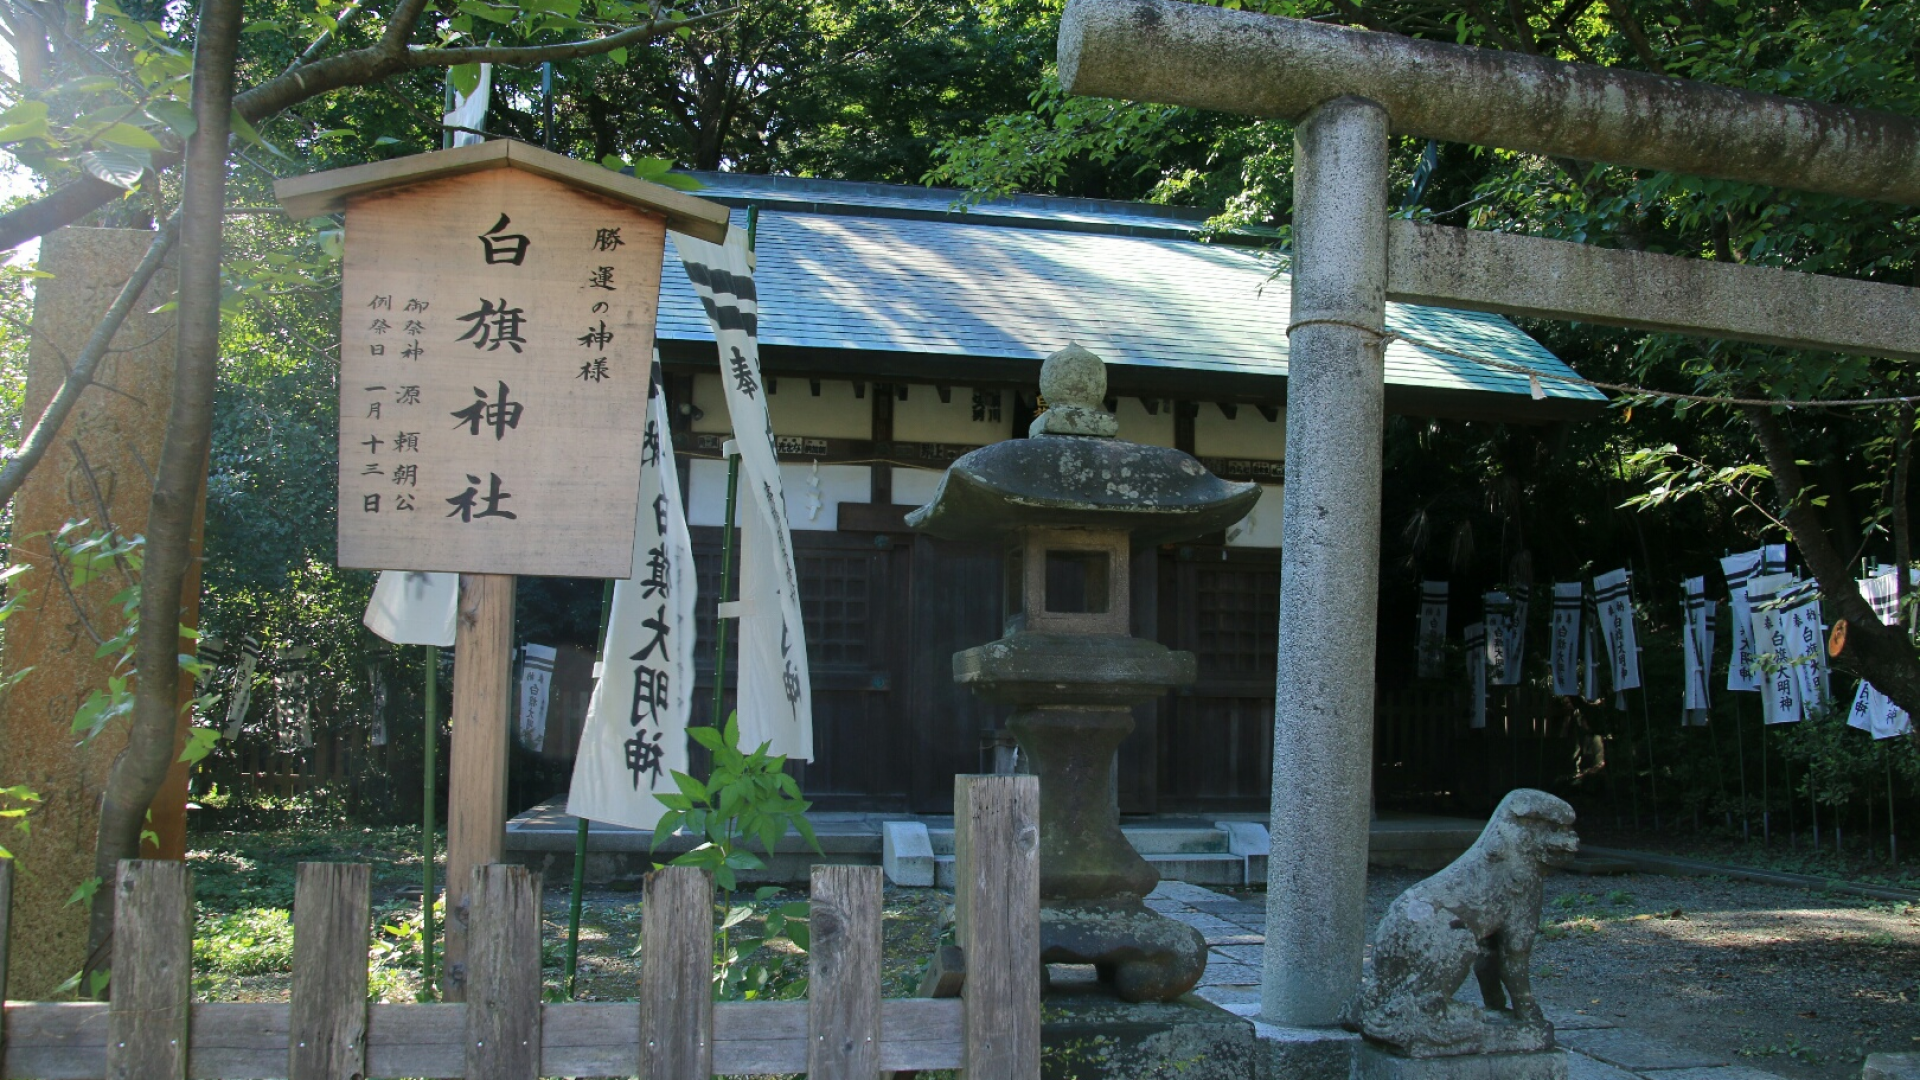  ศาลเจ้าชิราฮาตะจินจา(นิชิ-มิคะโดะ)